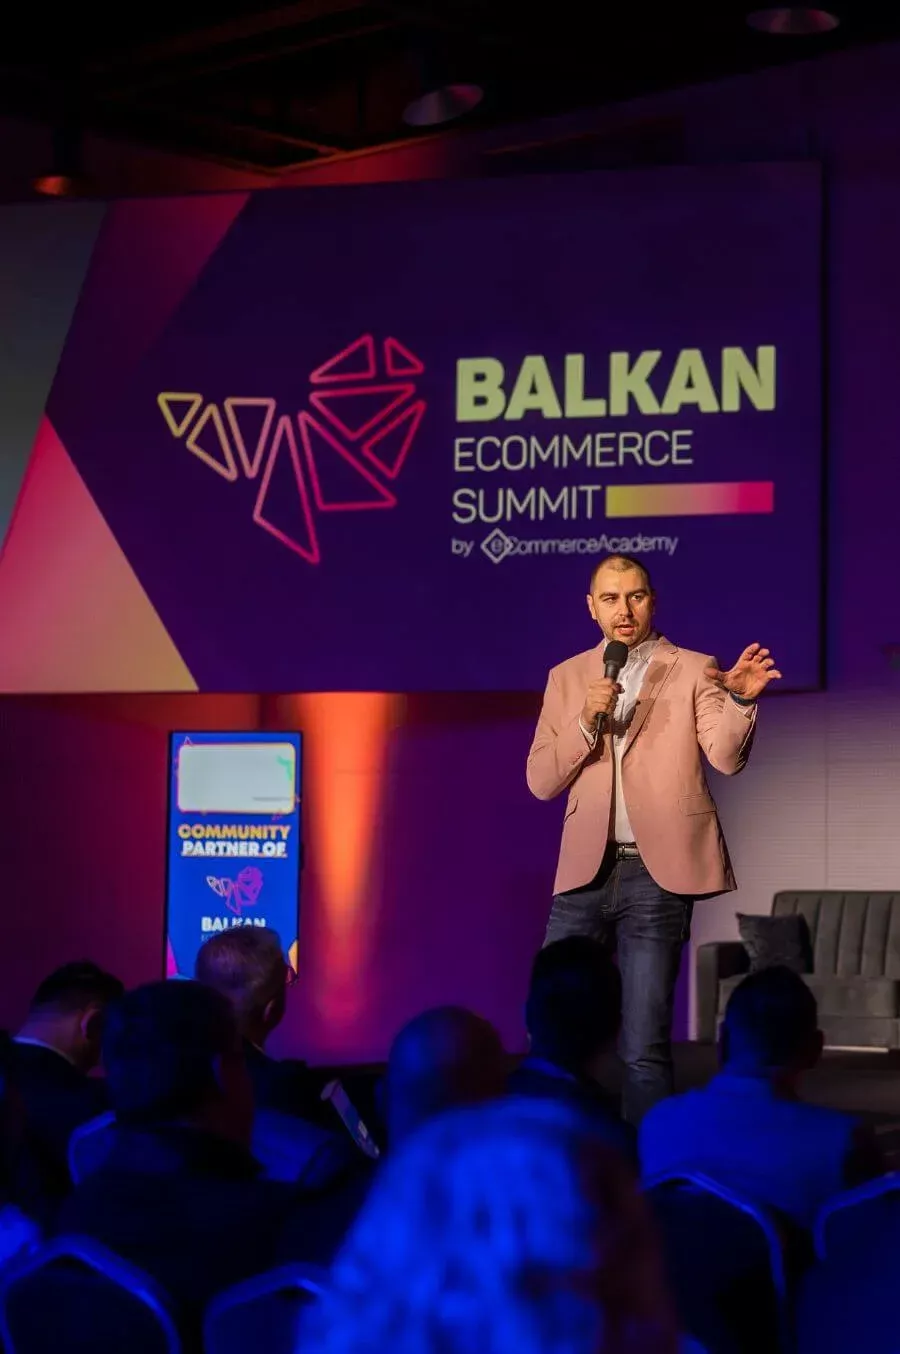 Никола Илчев, организаторът на събитието и една от най-влиятелните фигури в електронната търговия на  Балканите, обещава впечатляващо събитие, което ще предложи нови перспективи за сектора на електронната търговия в Балканския регион.